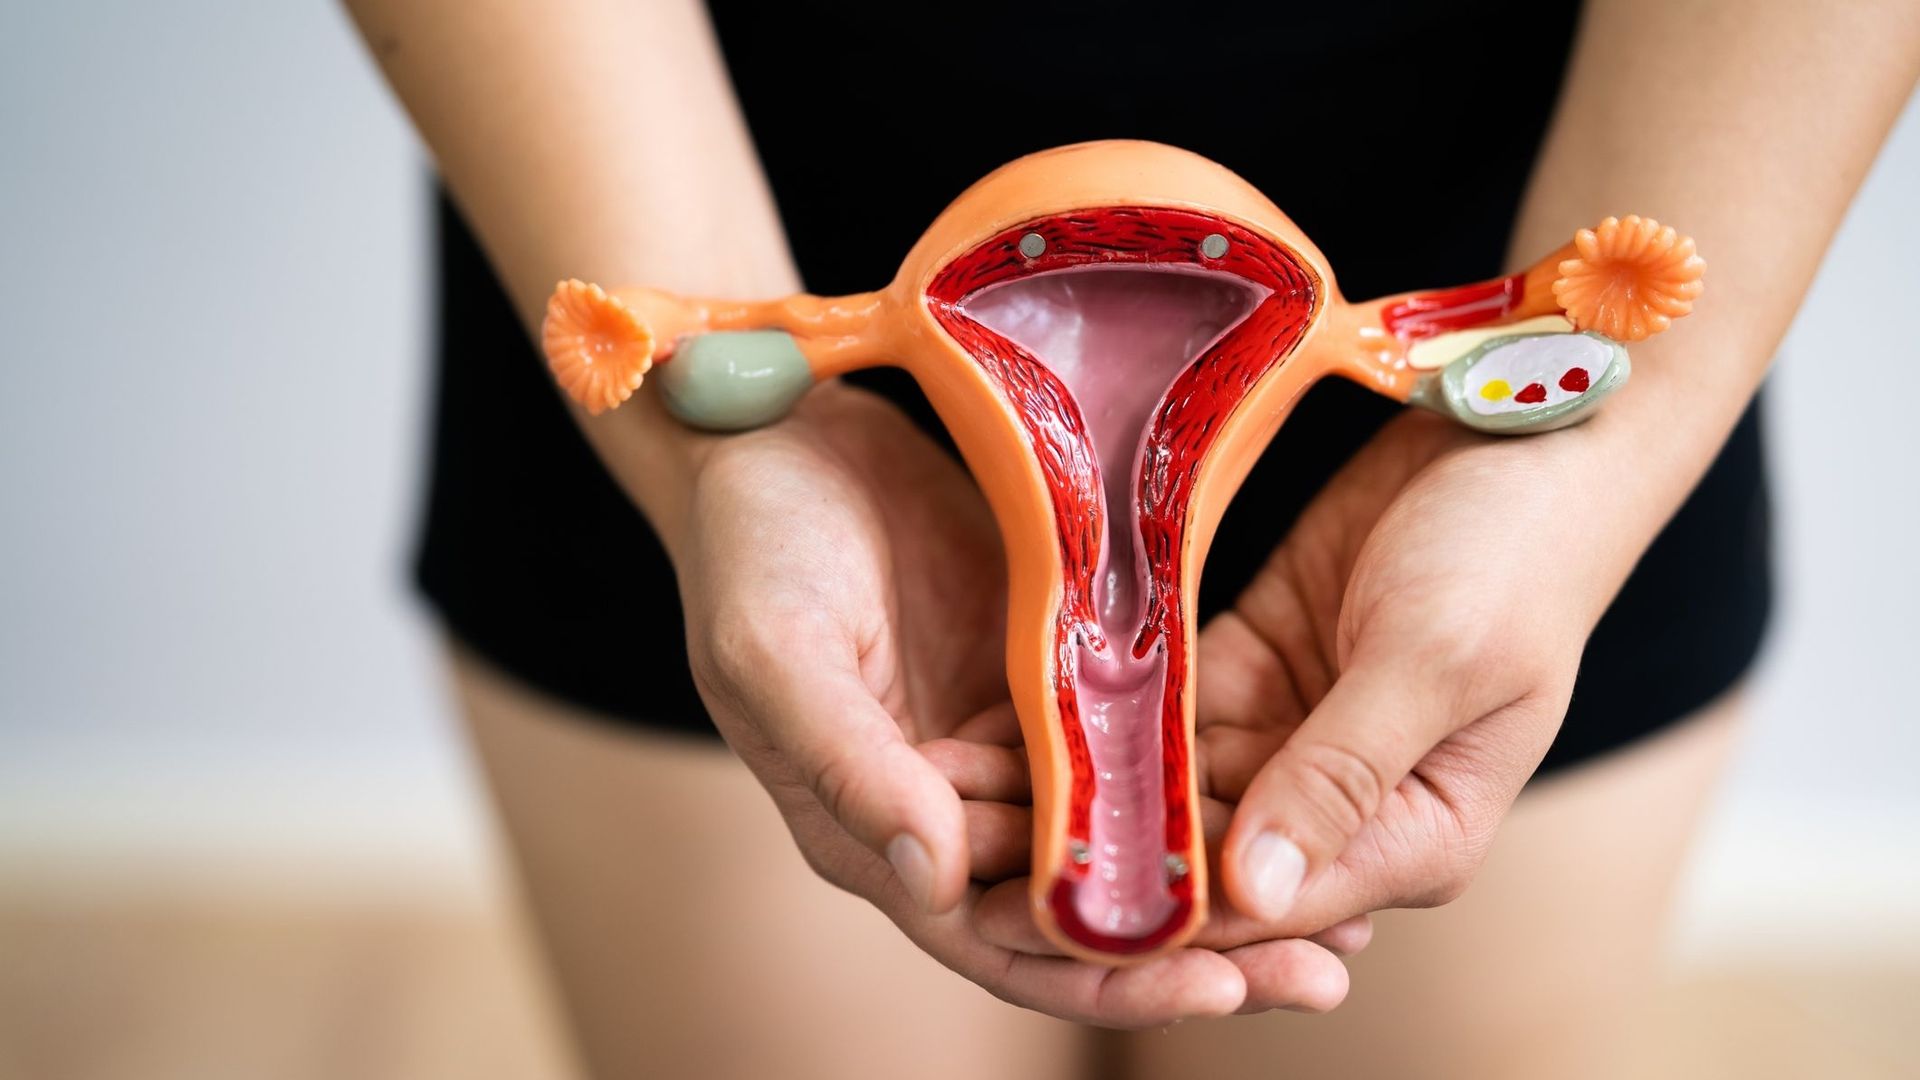 Ces chercheurs d'Harvard ont mis au point un vagin artificiel pour mieux étudier et comprendre les maladies gynécologiques.